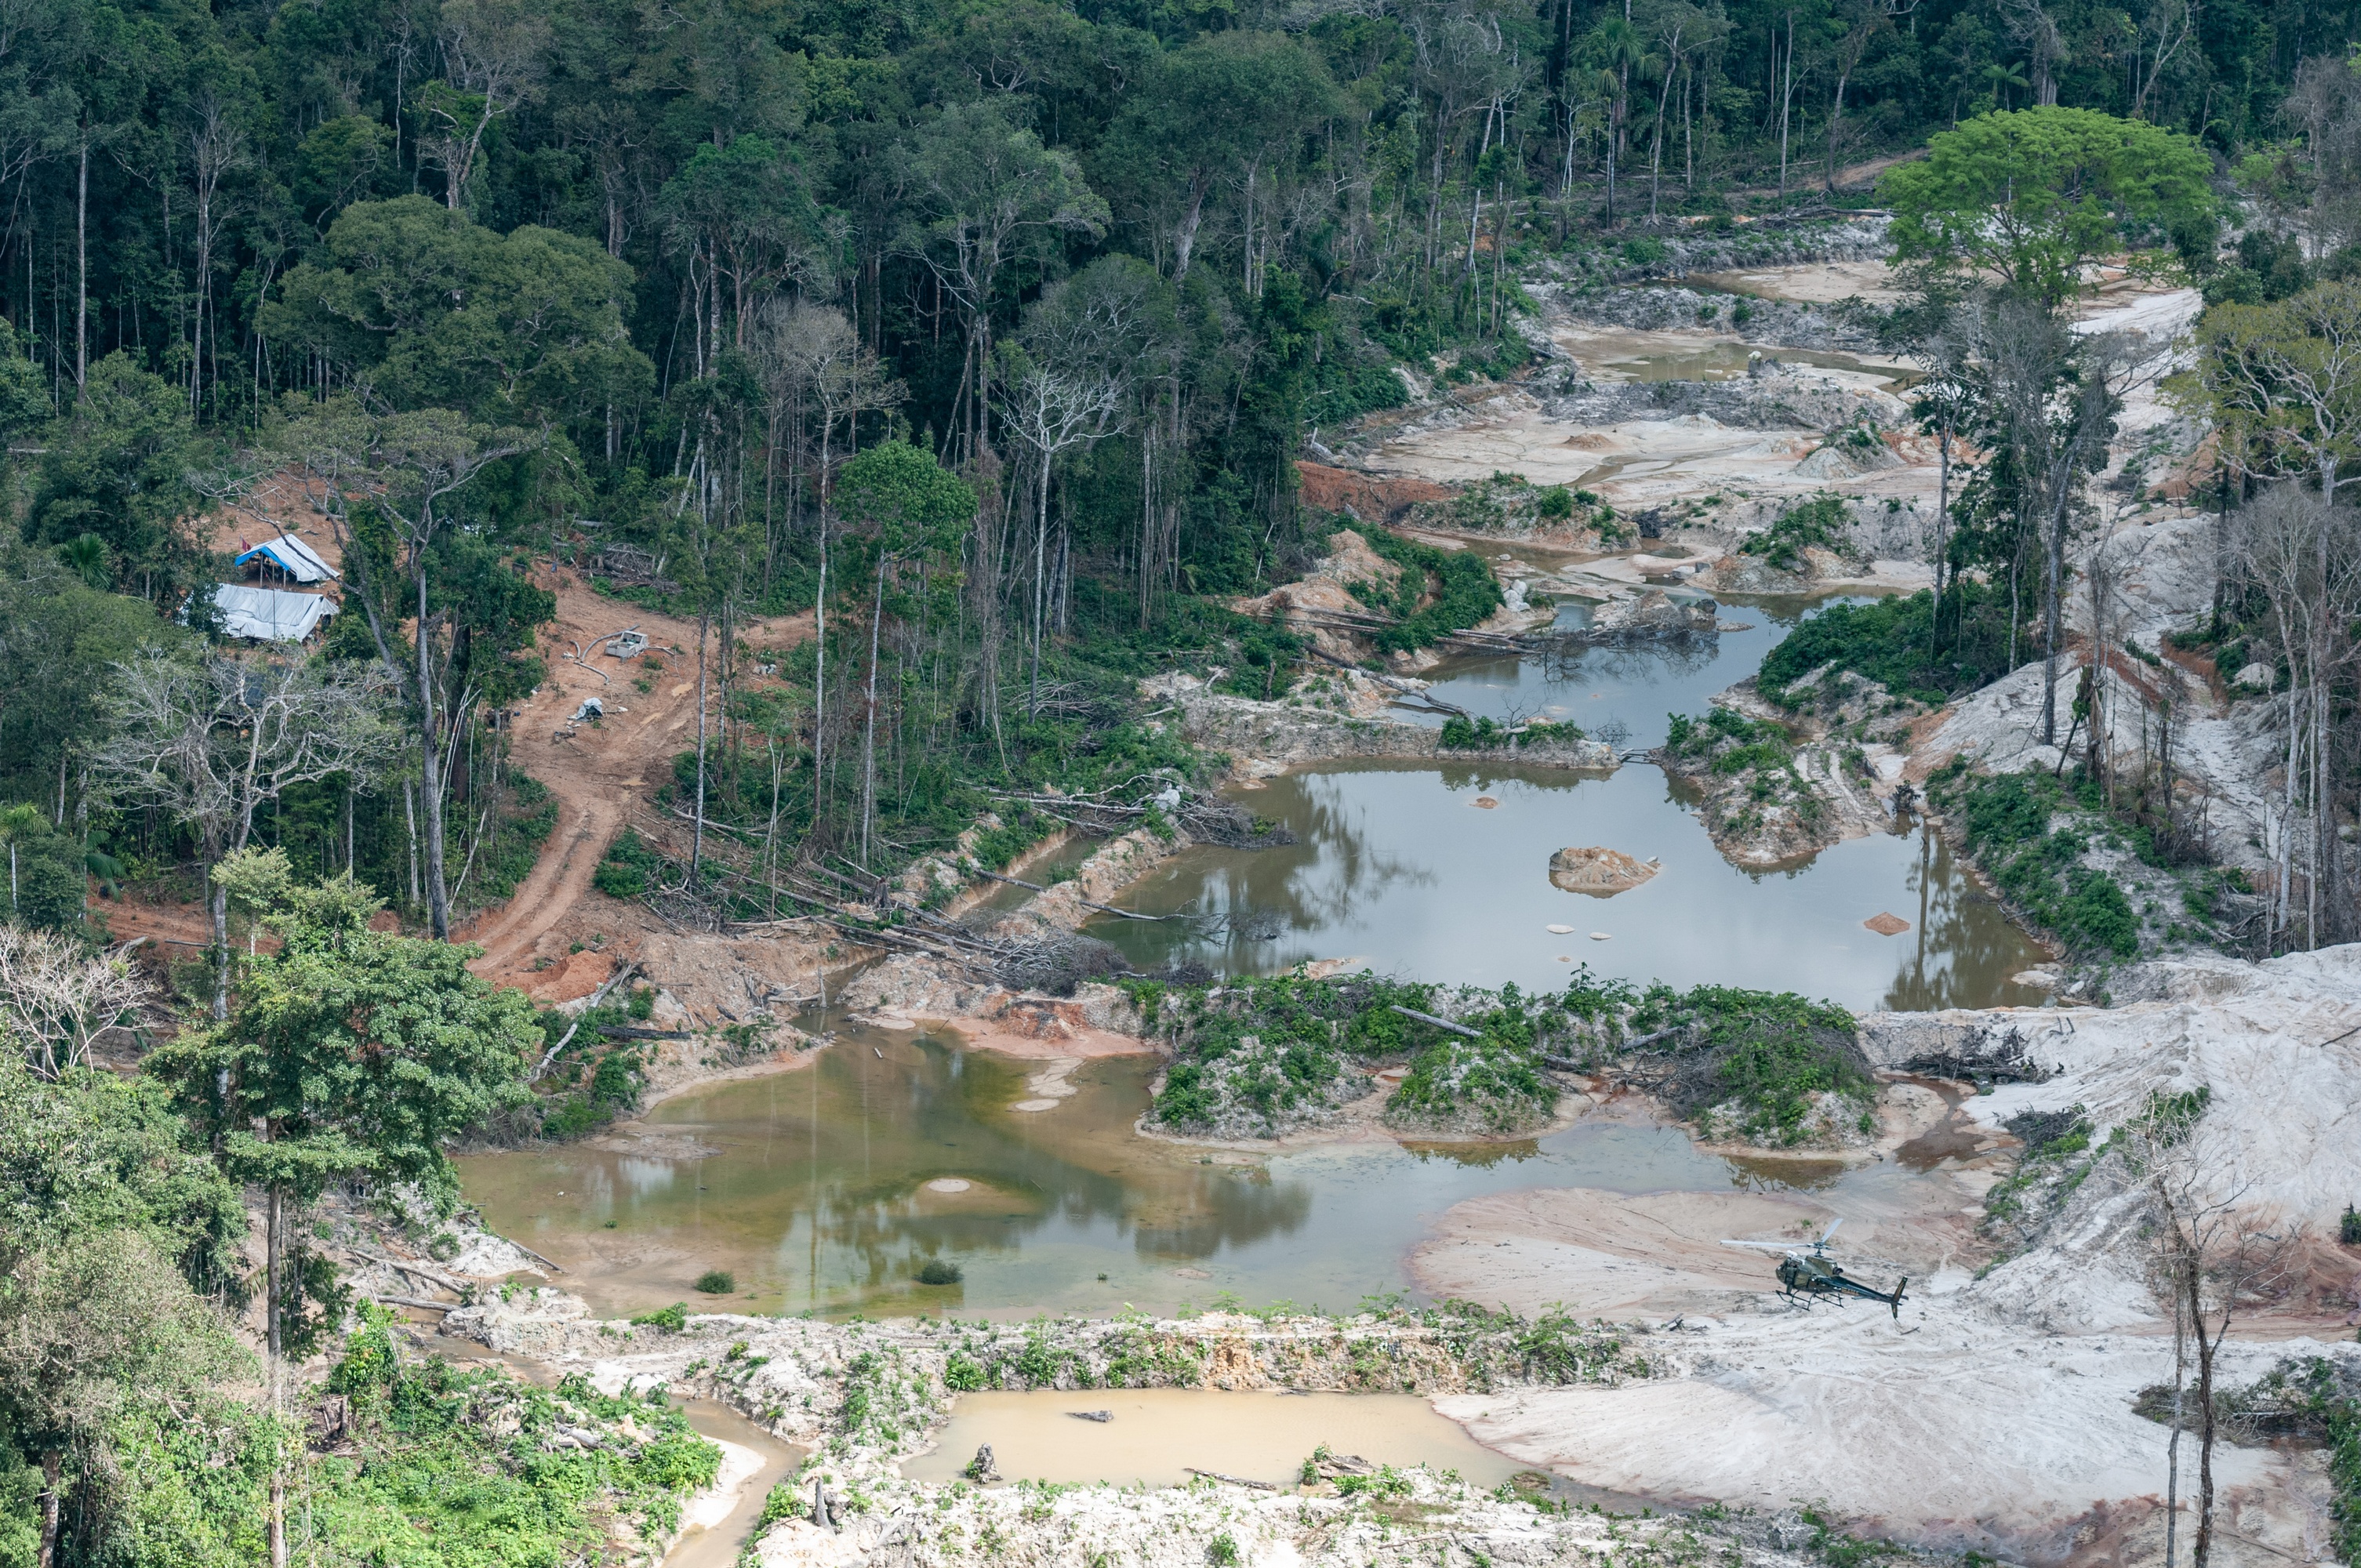 Clareira desmatada circundada pela floresta (amazônica), com vários poços com água barrenta em sequências formando diques.